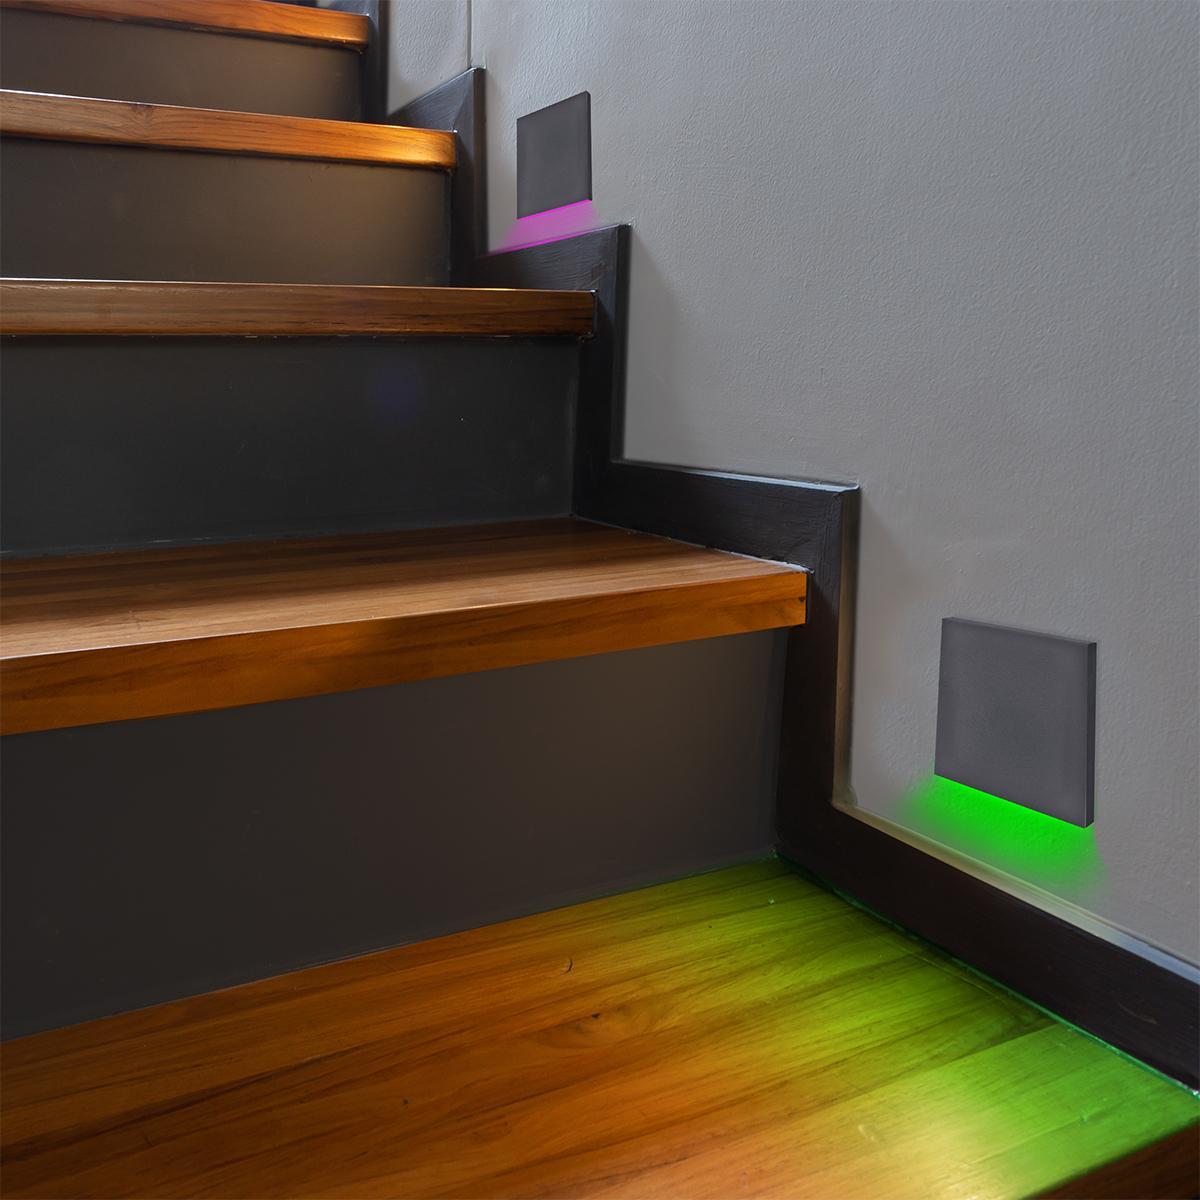 LED Treppenbeleuchtung 230V Wandeinbauleuchte eckig schwarz - Lichtfarbe: RGB Warmweiß 3W